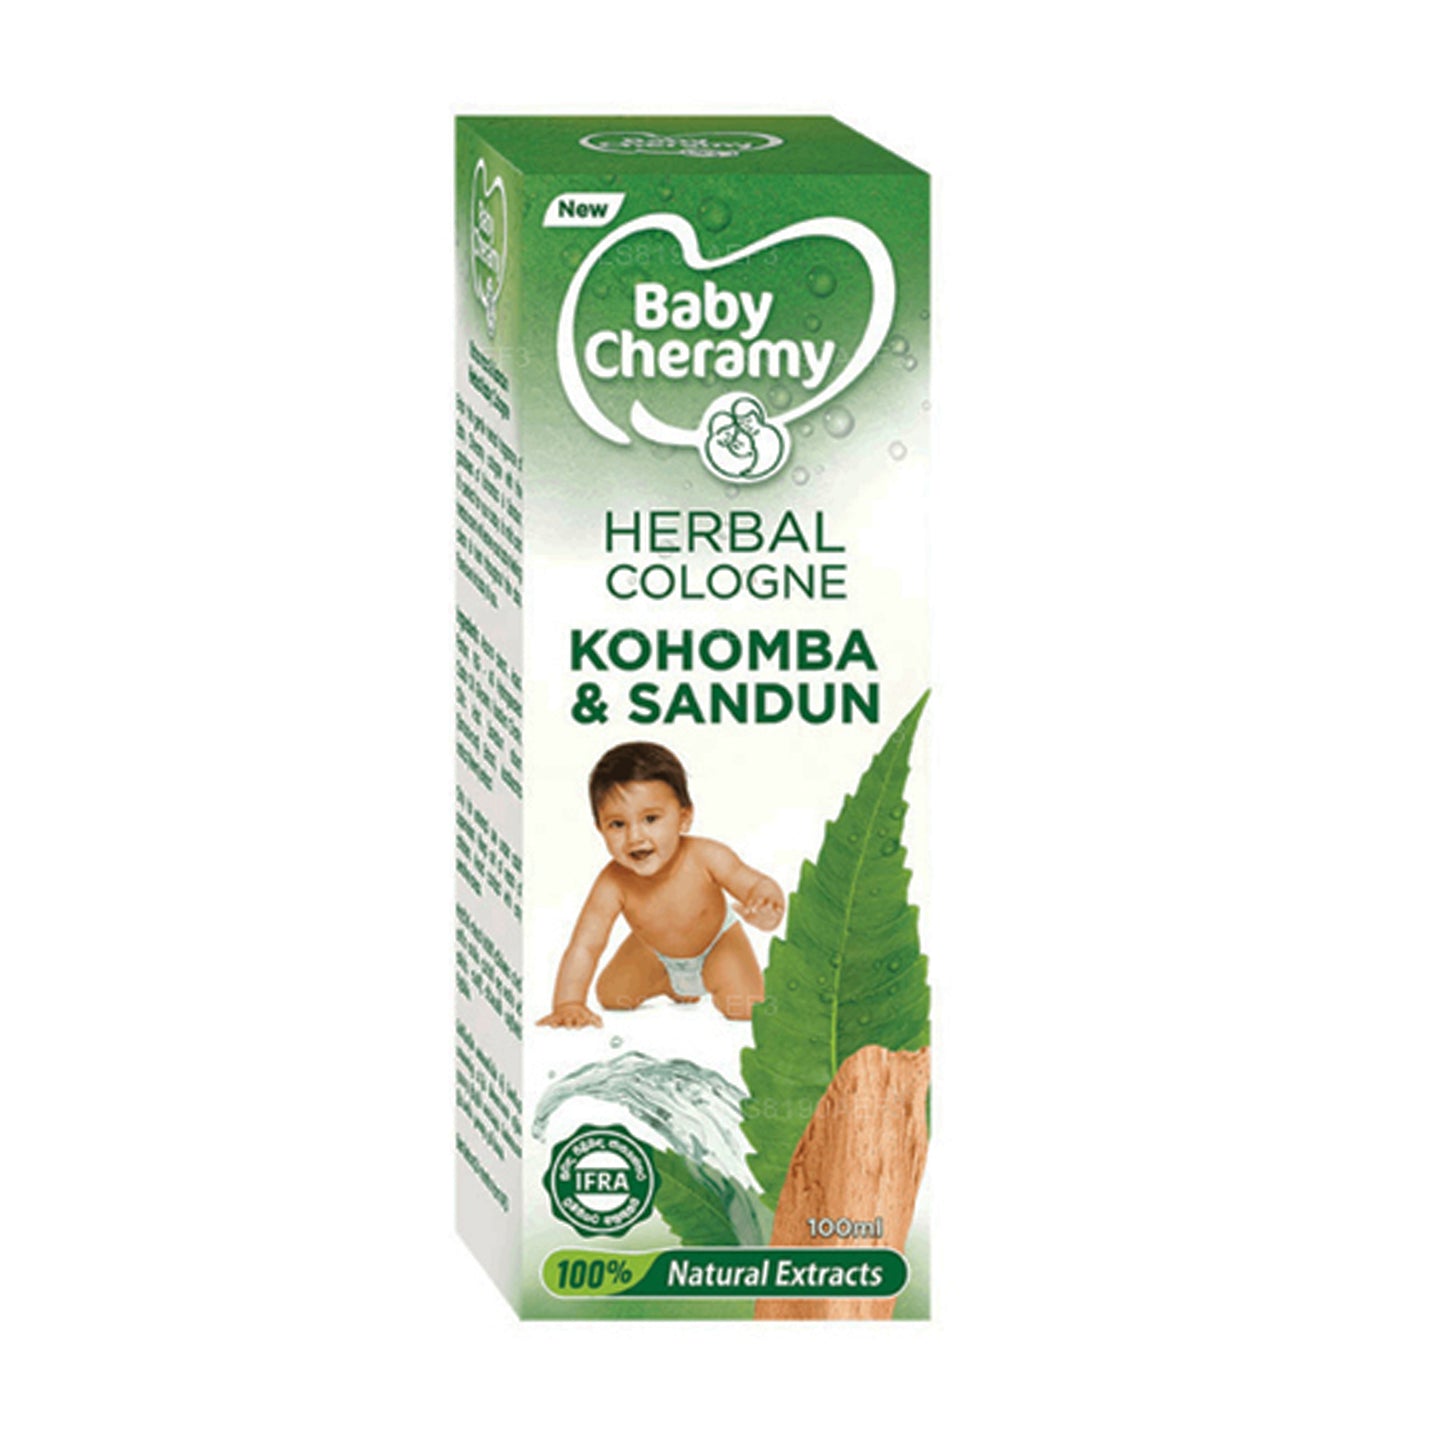 Baby Cheramy Herbal Kohomba und Sandun Cologne (100 ml)